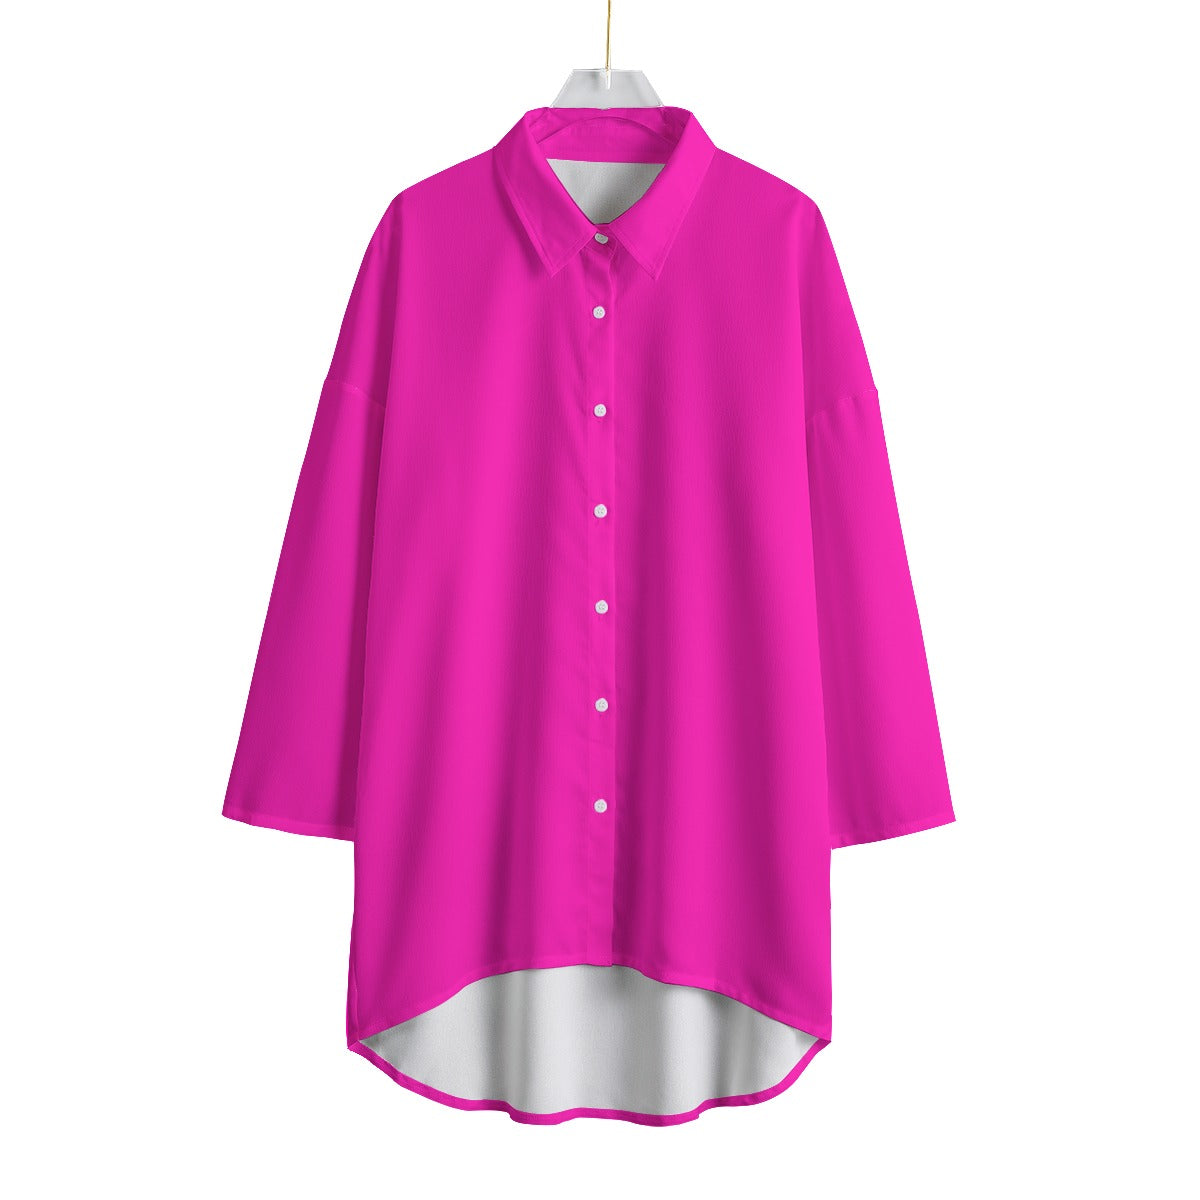 TGC FASHION Hot Pink Chiffon Shirt